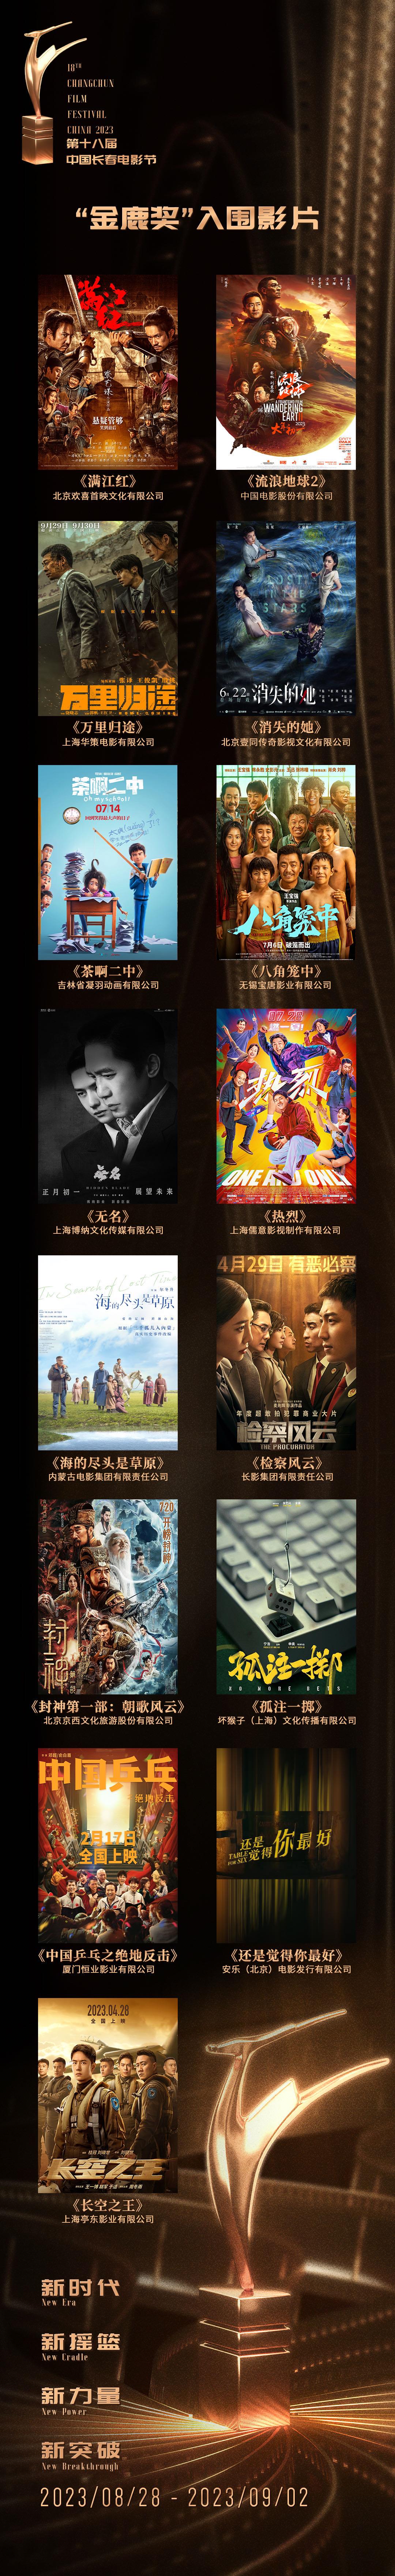 第十八届中国长春电影节“金鹿奖”入围影片名单公布